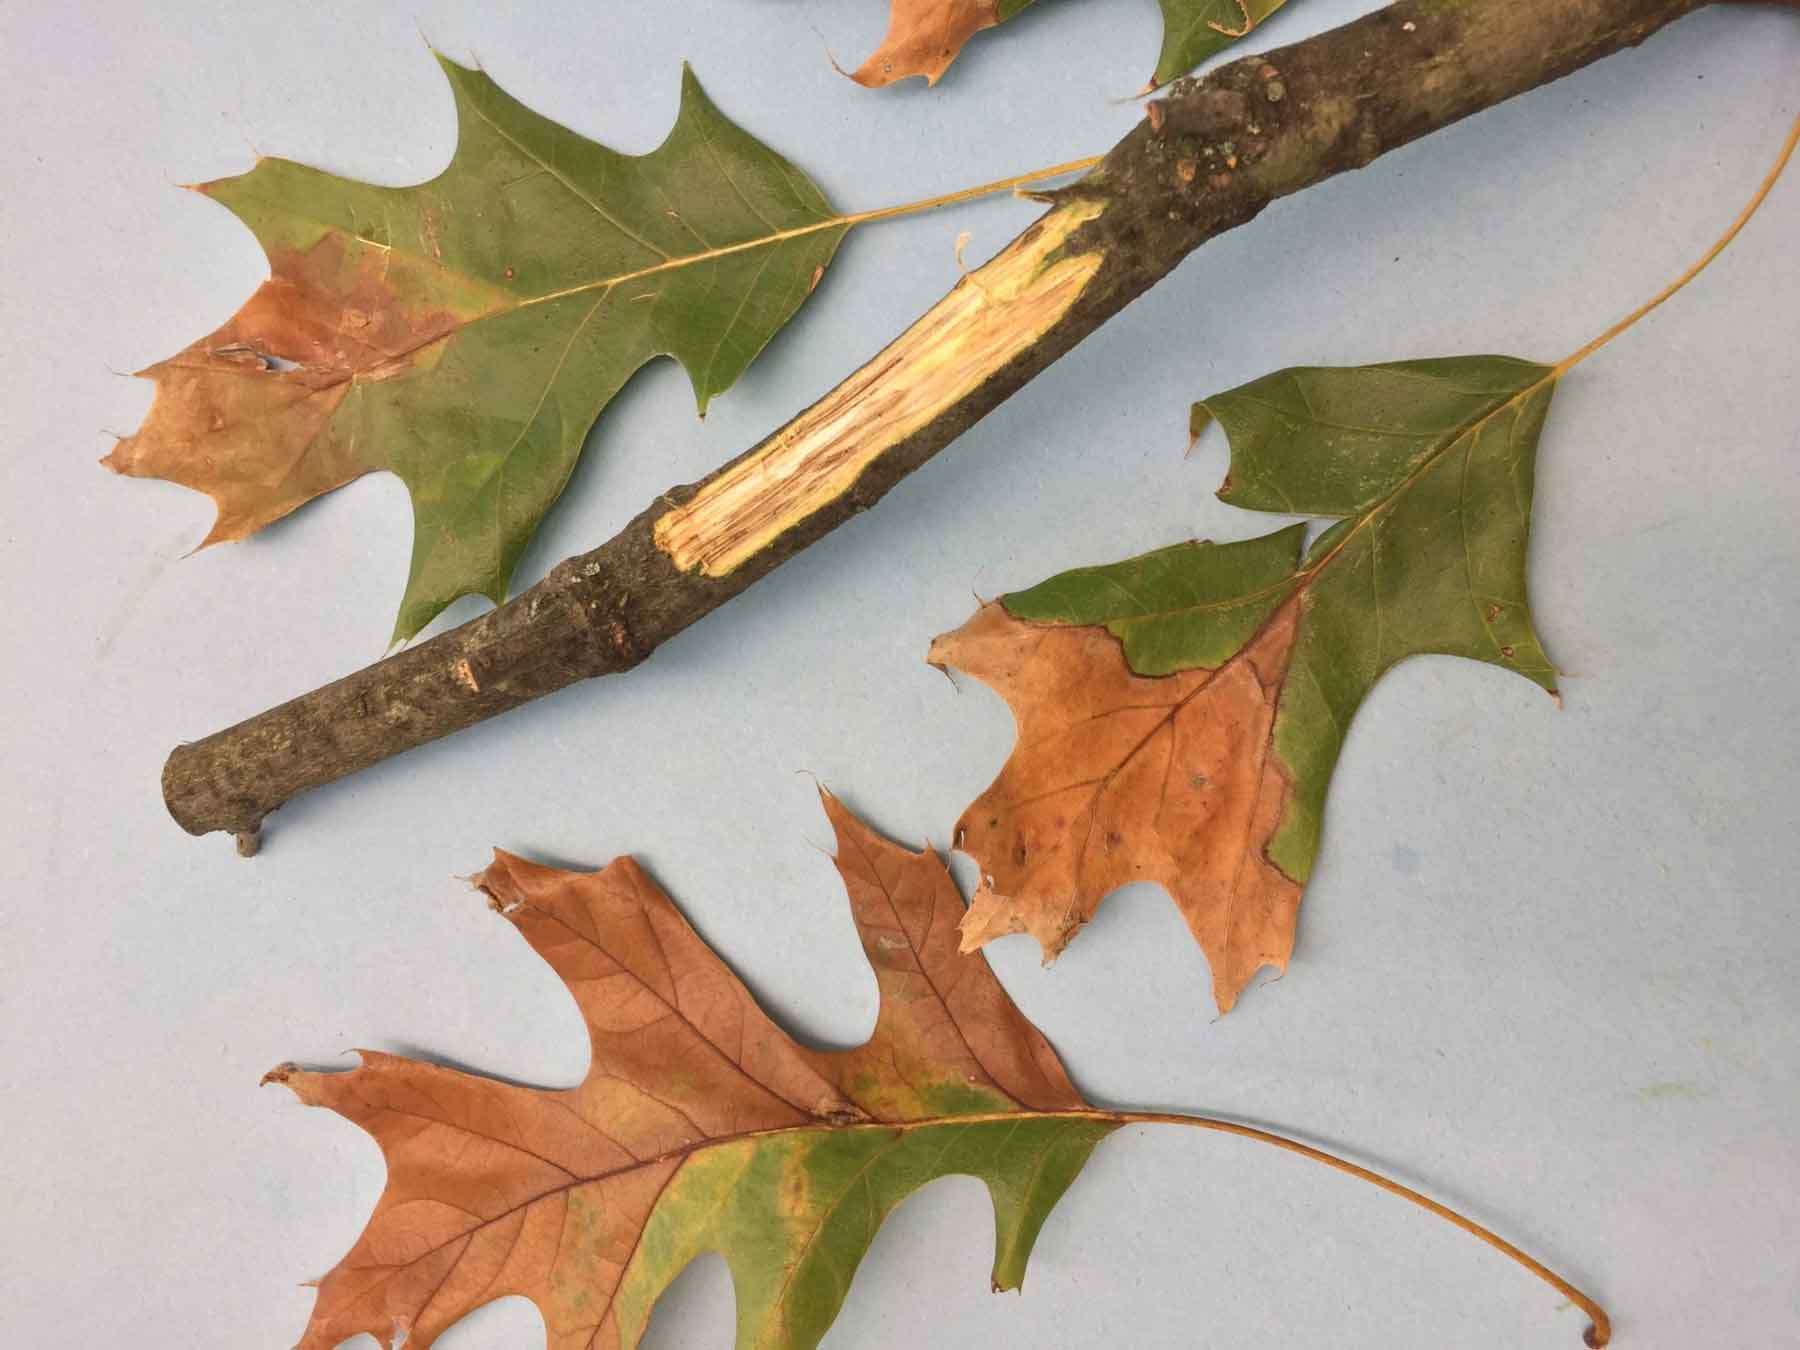 oak wilt symptoms in branch and leaves